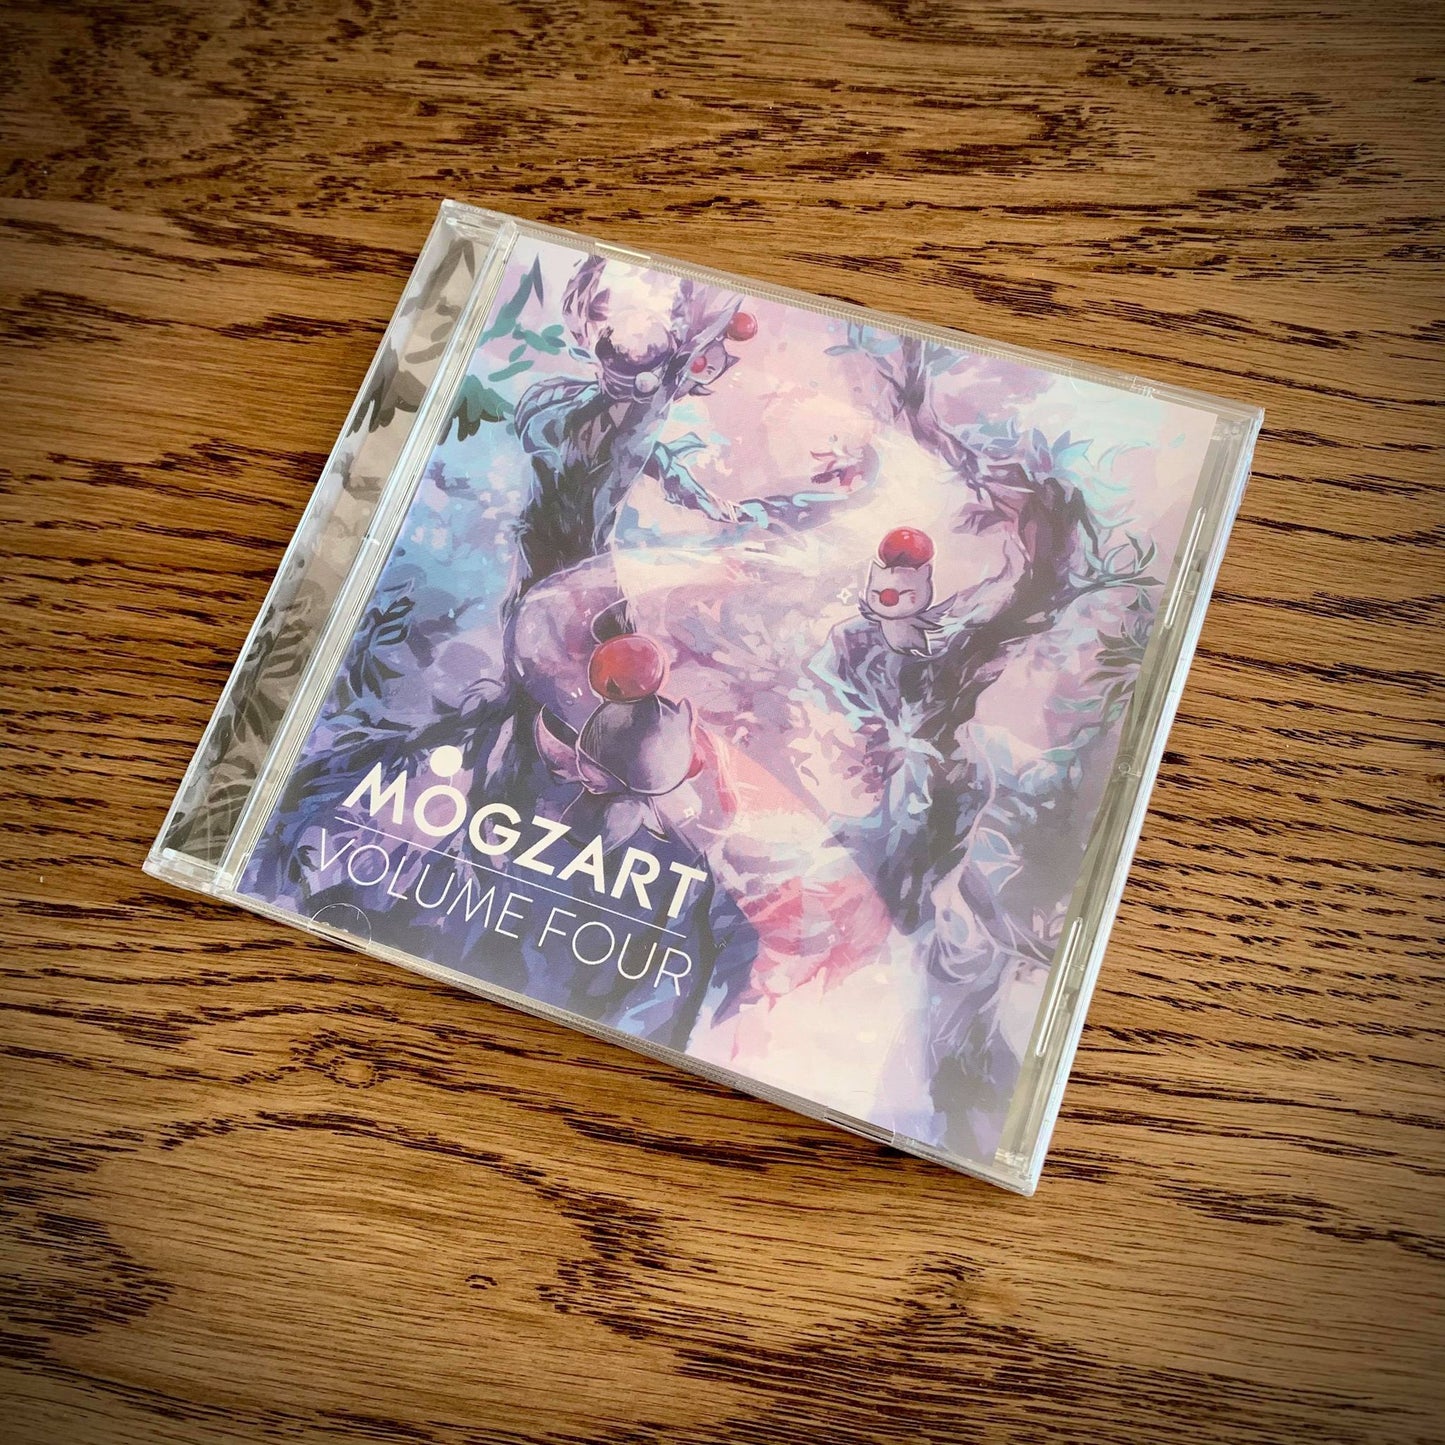 Mogzart Vol. 4 CD